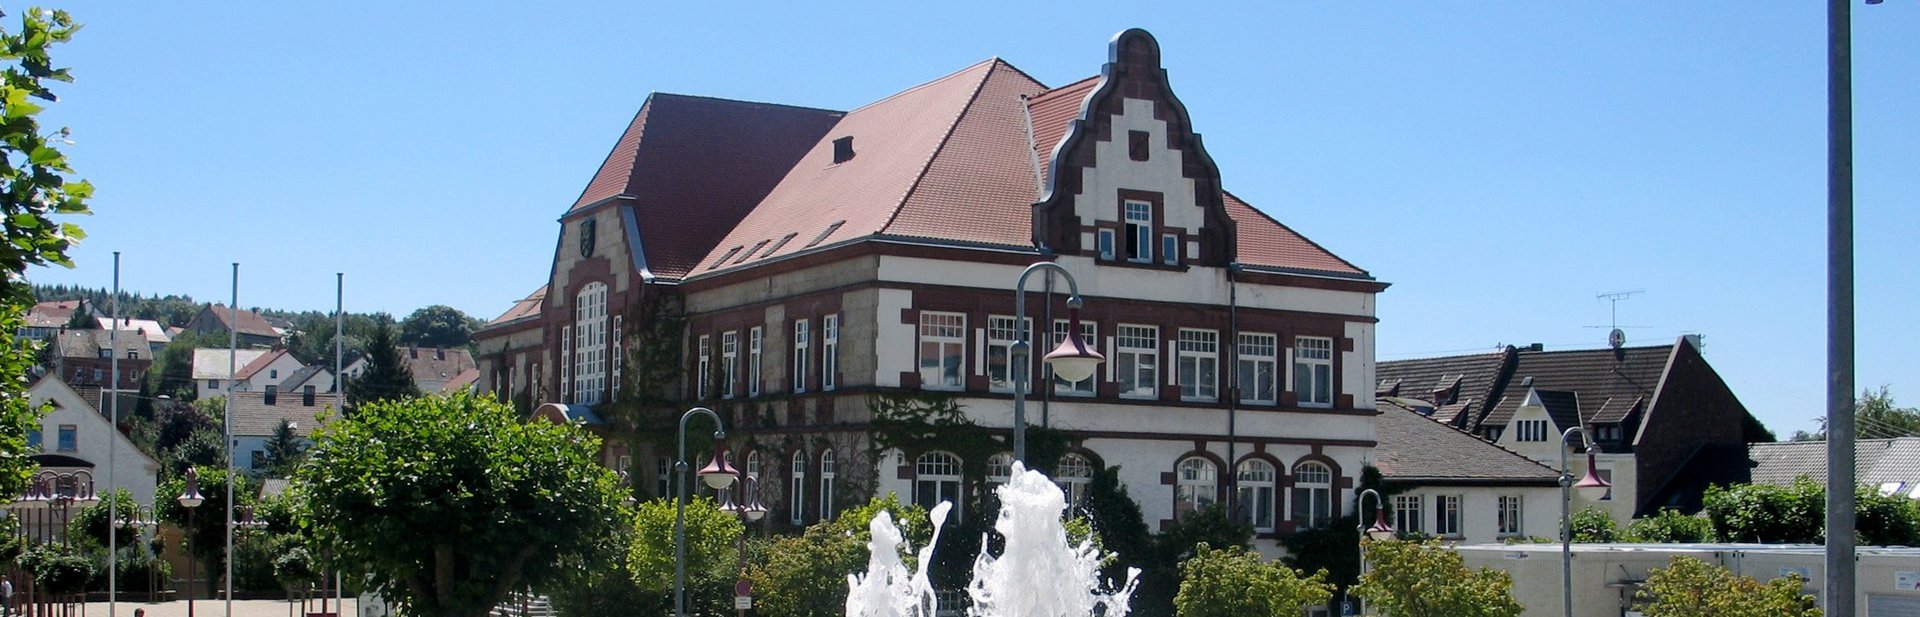 Ortsteil_Friedrichsthal_Rathaus